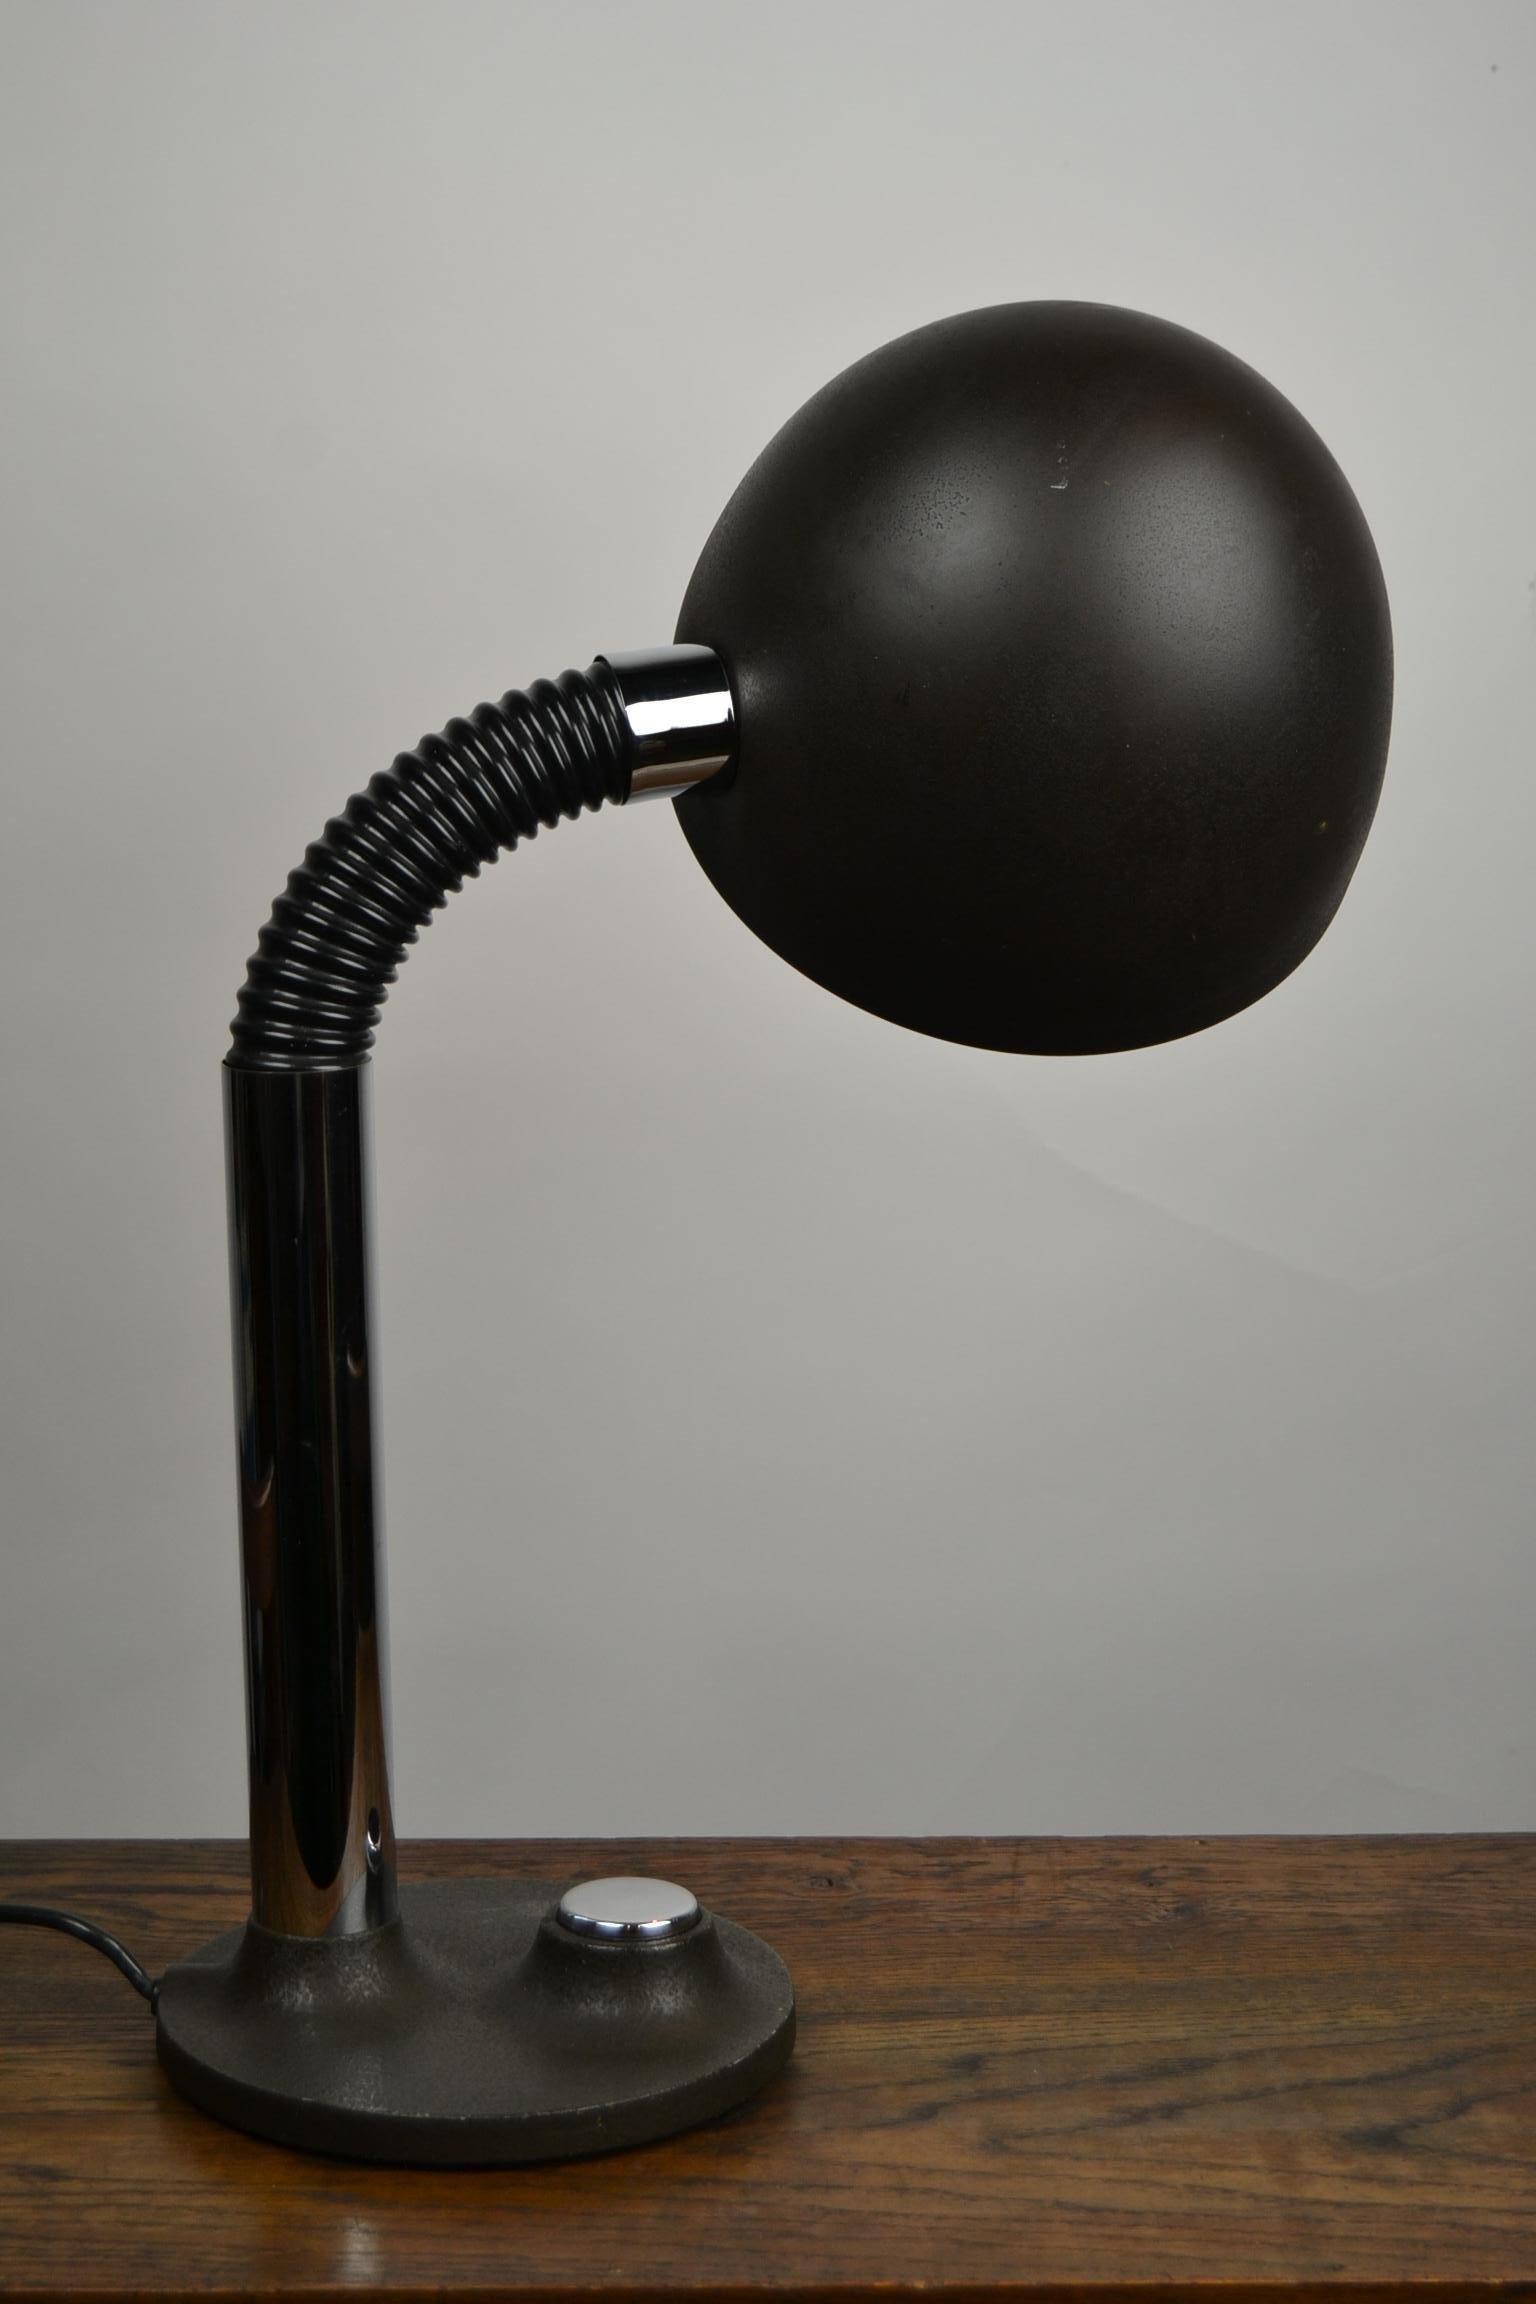 Schreibtischlampe im Industriedesign von Egon Hillebrand für Hillebrand Lighting.
Die Tischleuchte hat einen gelenkigen und biegsamen Arm, was sie funktionell macht, um nach oben, unten und zur Seite zu leuchten.
Diese Leuchte aus den 1970er